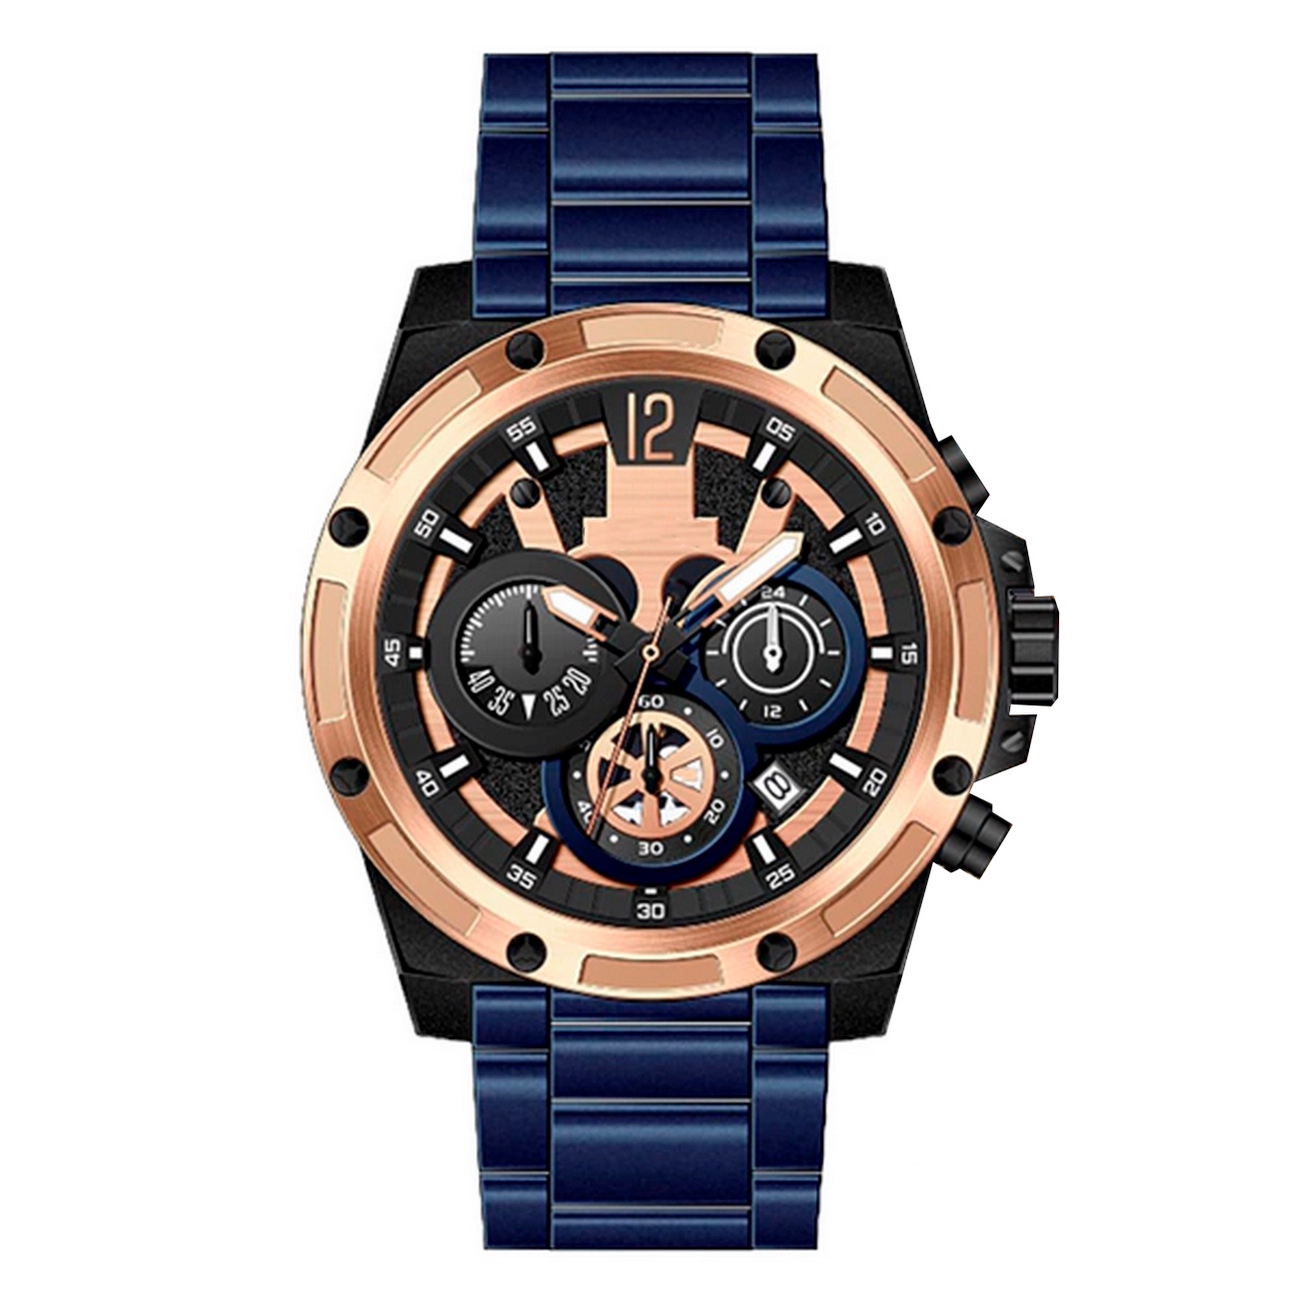 Reloj G-force Original H3907g Cronografo Azul + Estuche